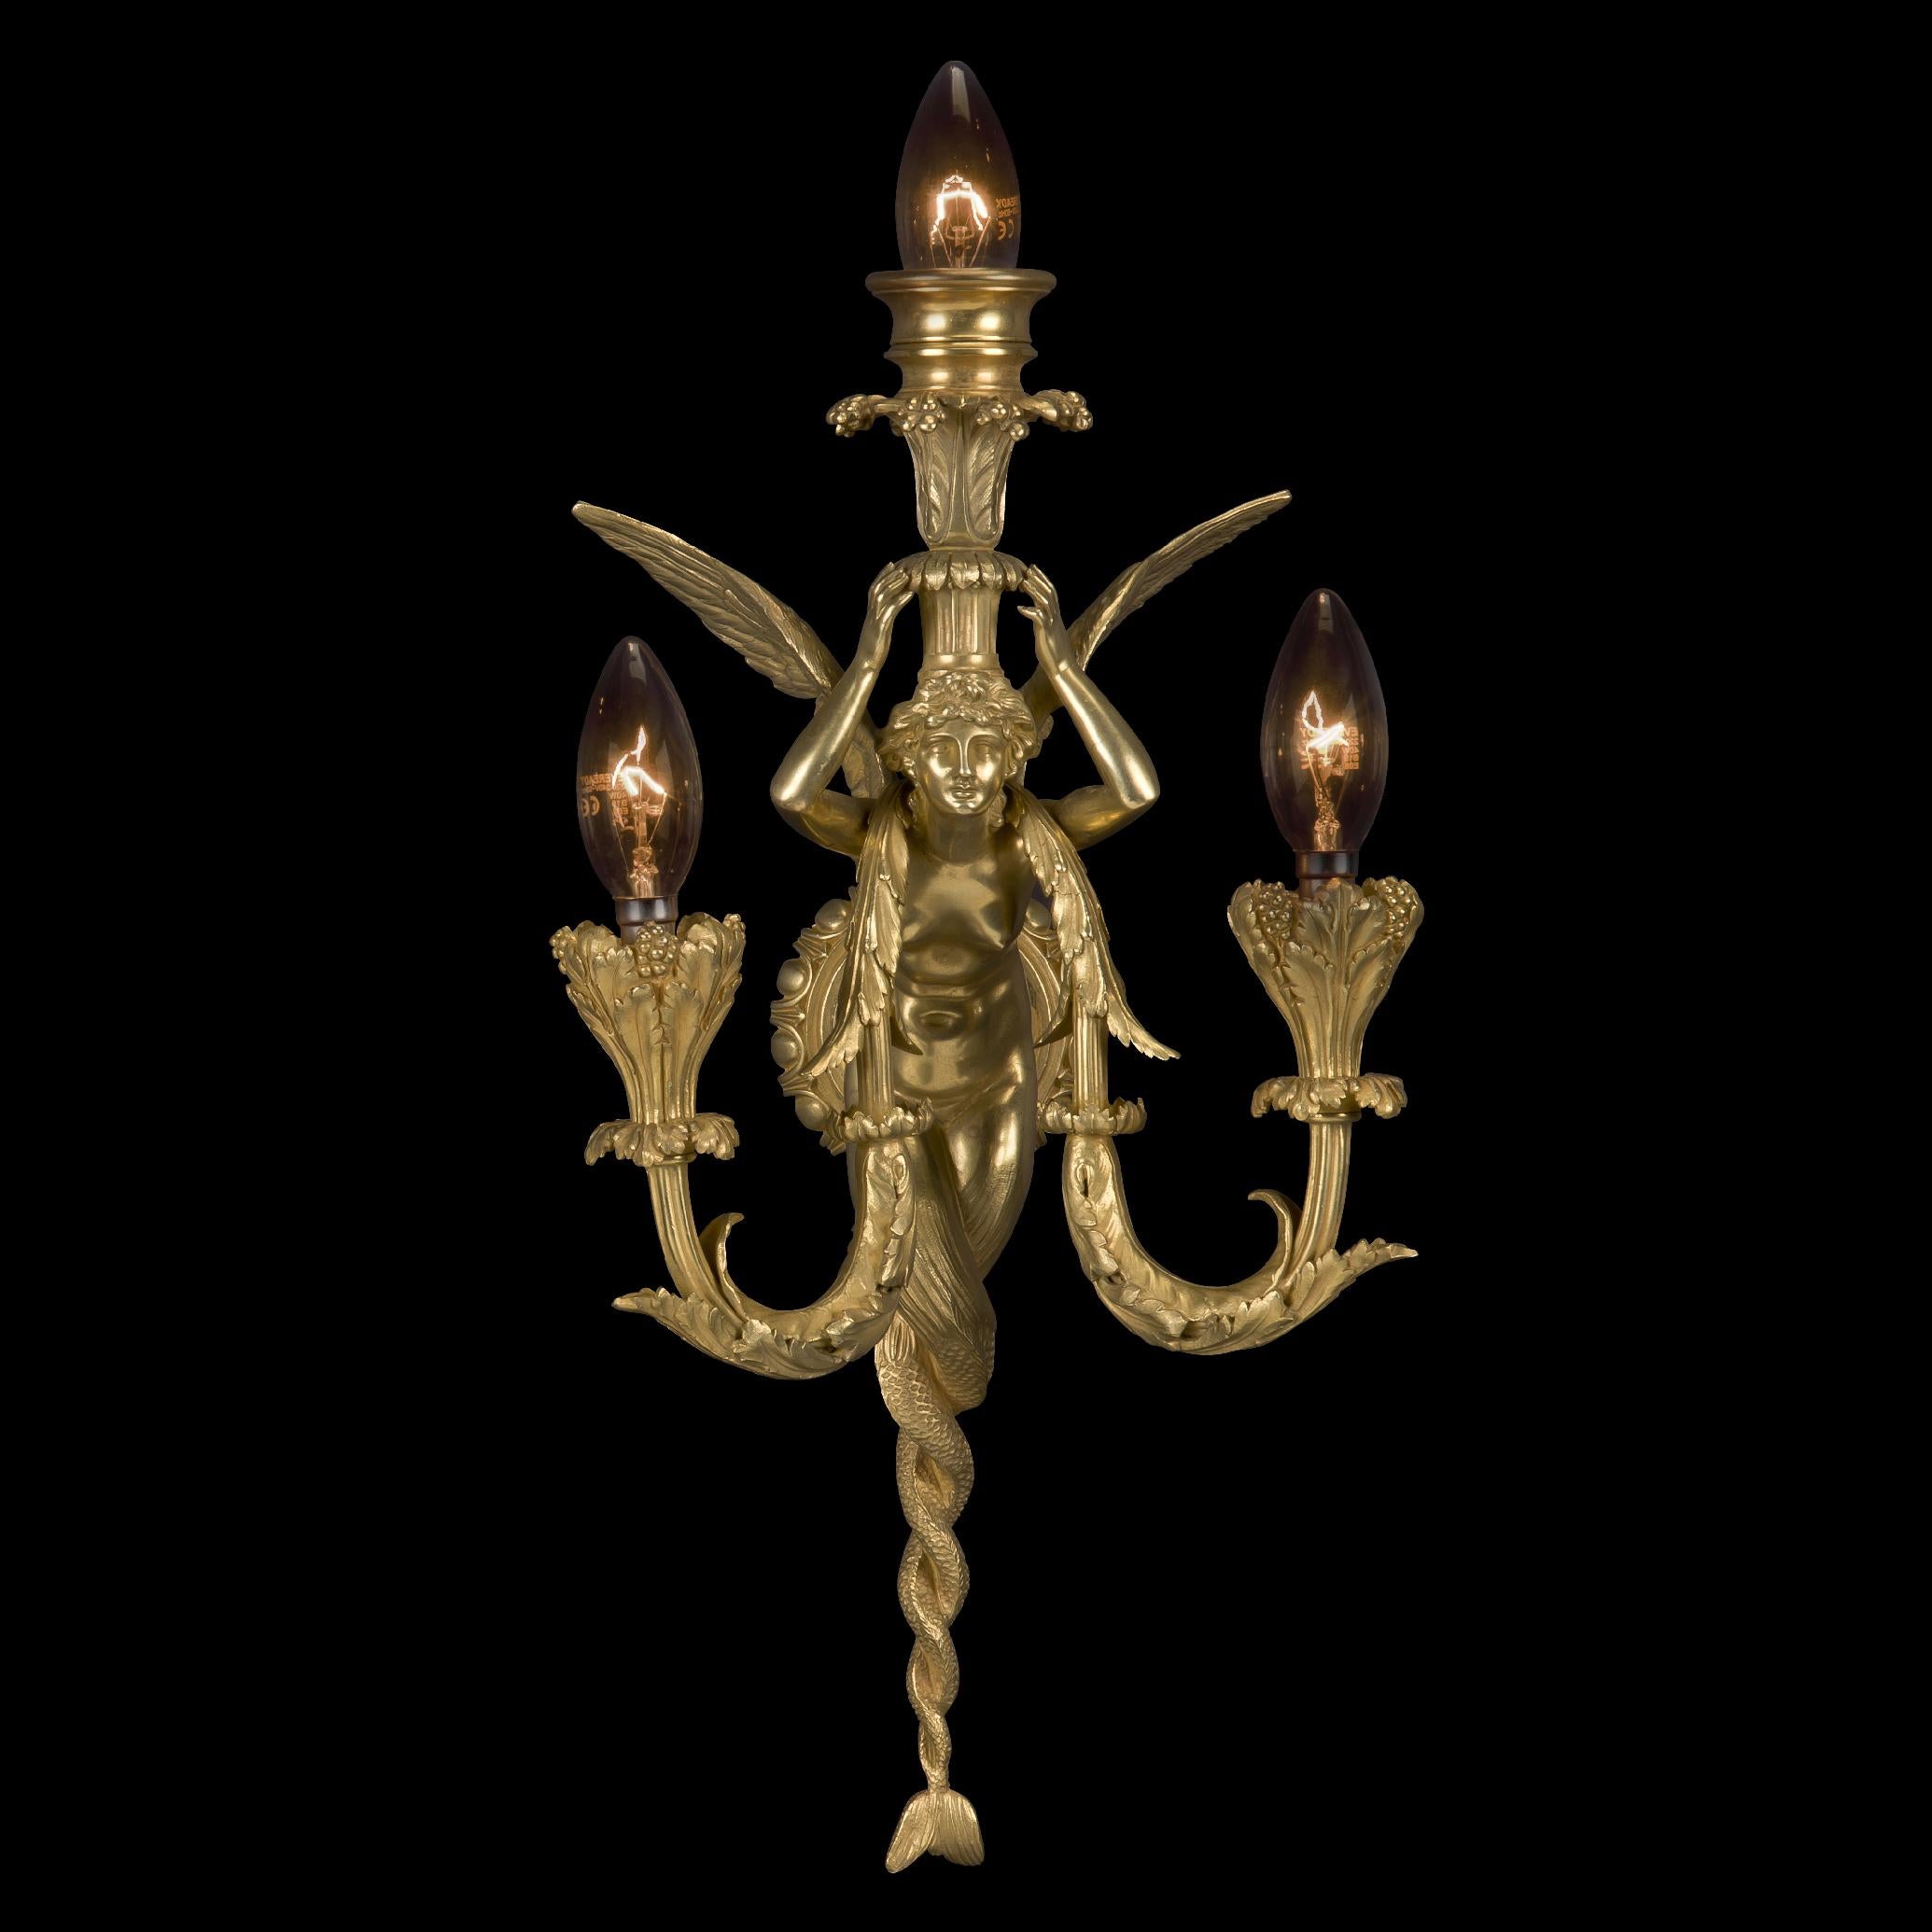 Une belle paire d'appliques murales à trois lumières en bronze doré Napoléon III, par la Maison Millet.

Chaque applique représente une sirène canéphore ailée soutenant un panier en forme de palmette et présentant deux branches de chandelle